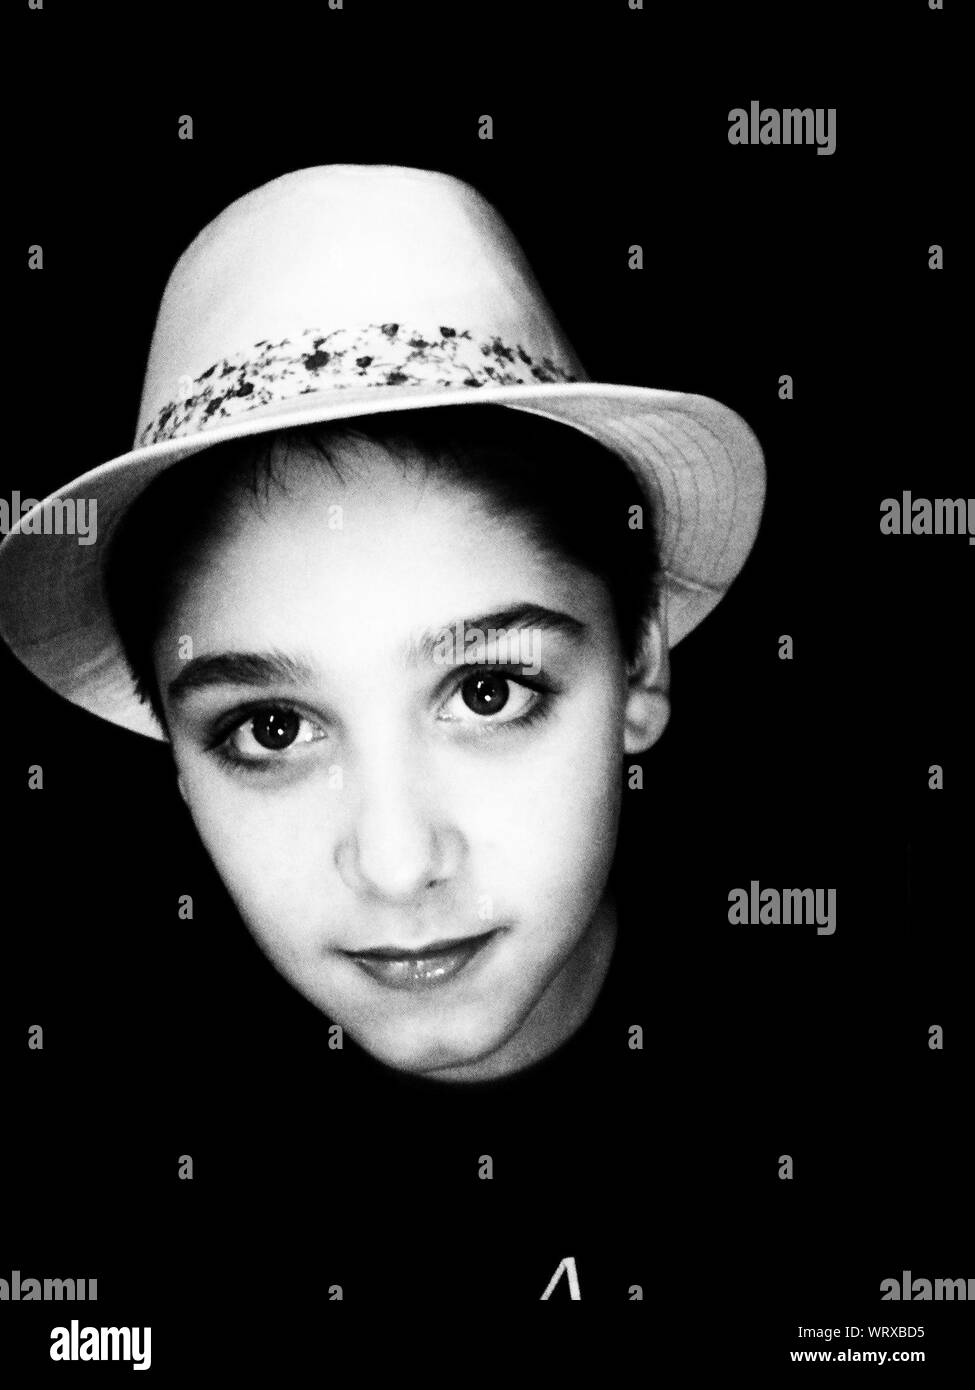 Close-up Retrato de niño usando Hat contra fondo negro Foto de stock